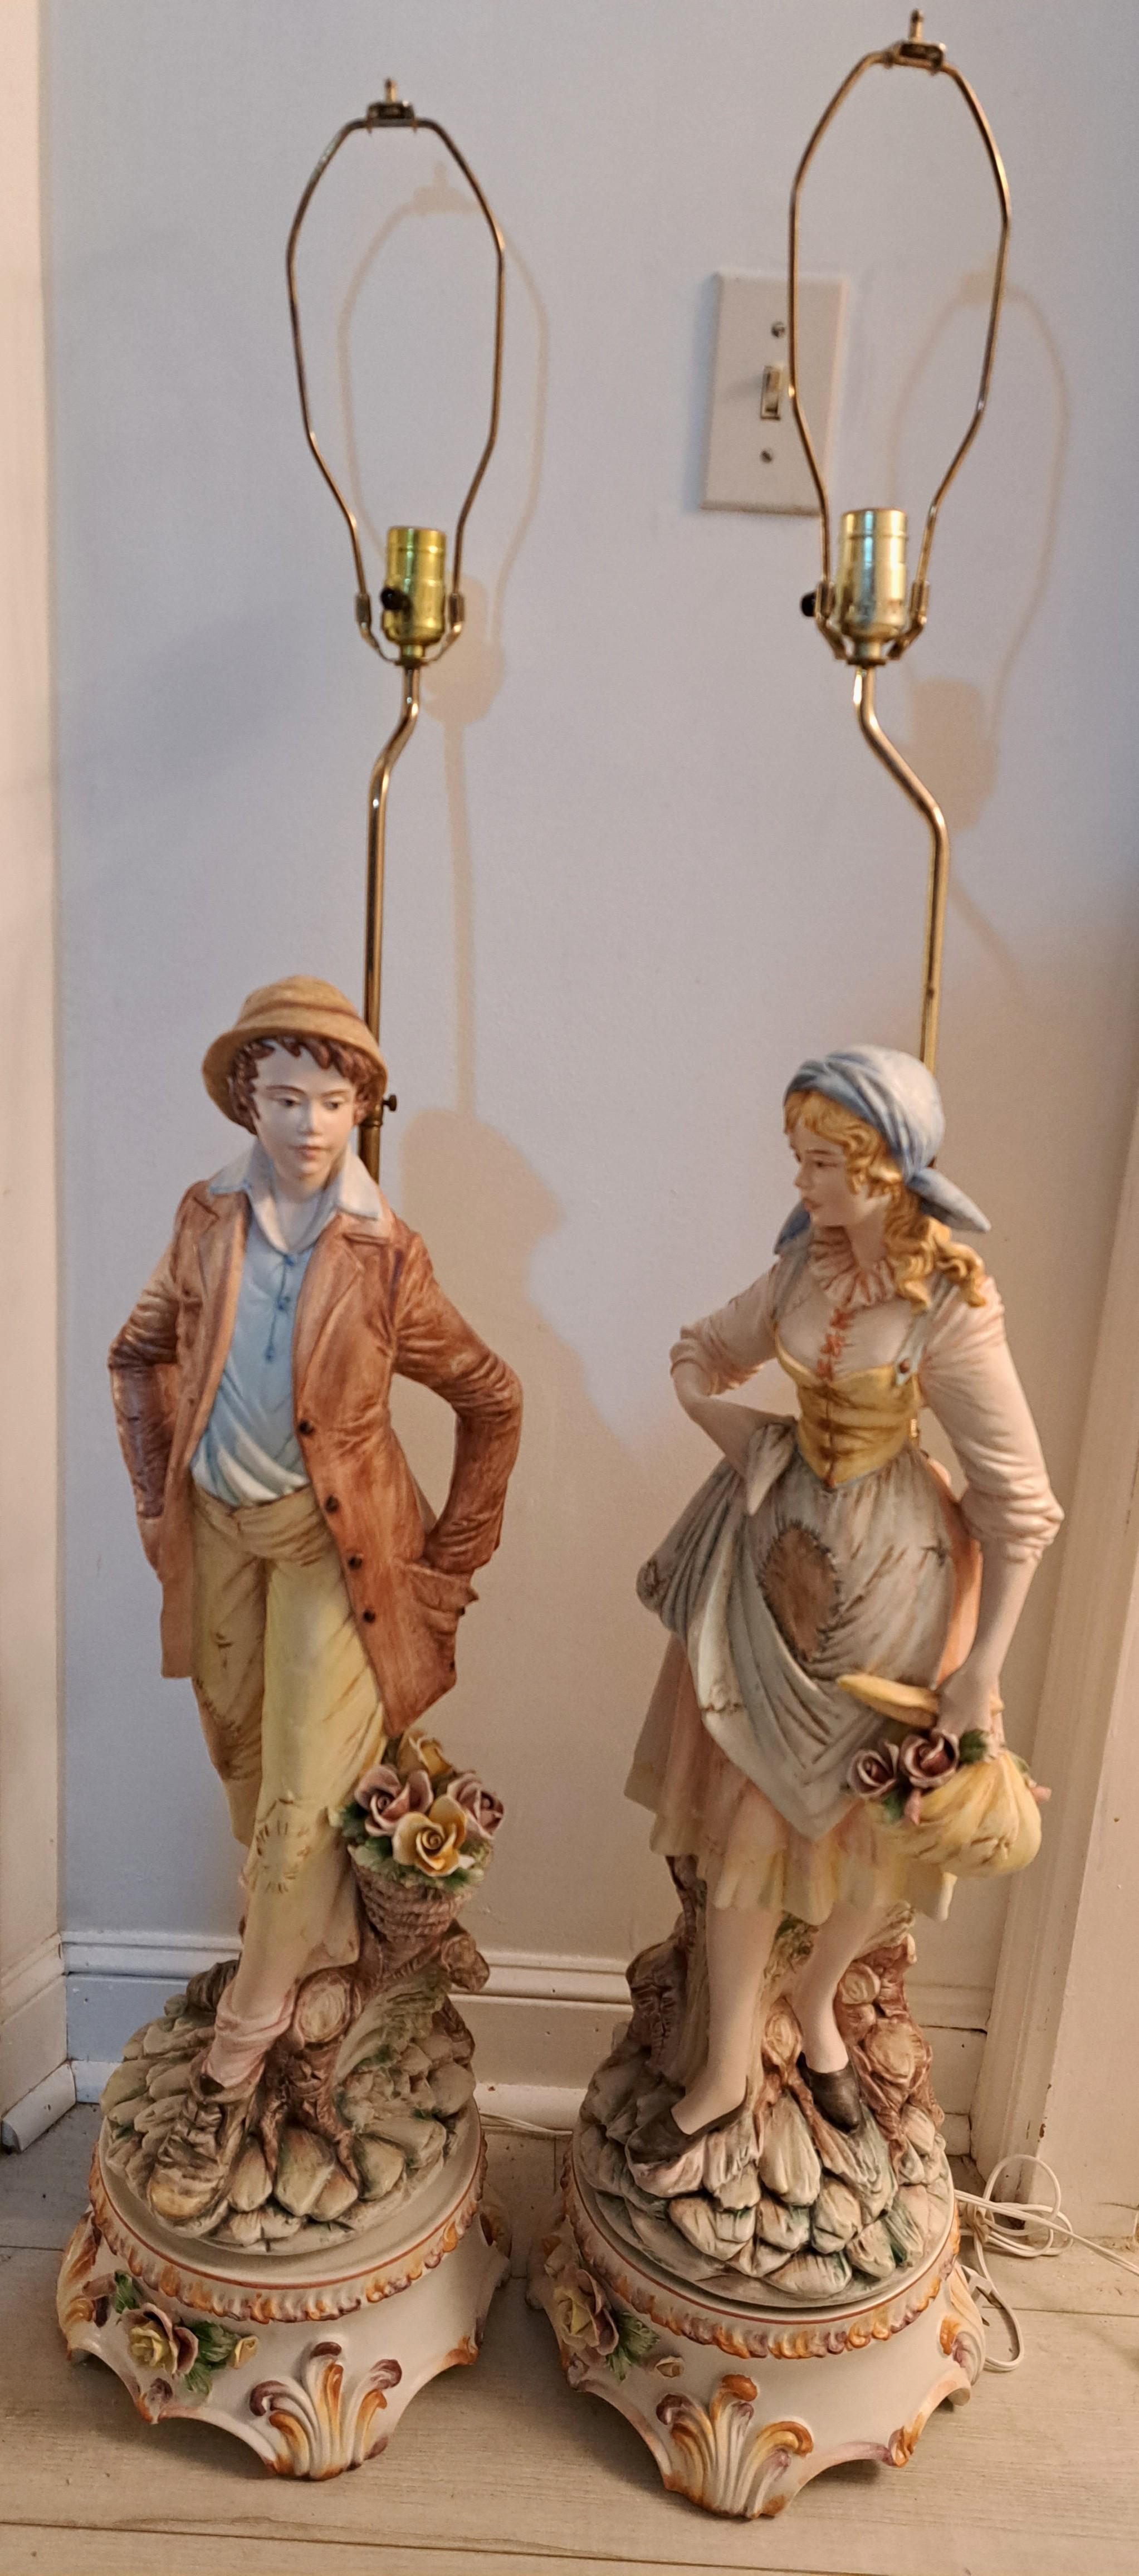 Ein Paar fein gearbeitete figurale Capodimonte-Porzellanlampen. Männliche und weibliche Figuren von Mädchen und Jungen aus dem ländlichen Raum. Gefertigt in Italien. Besteht aus einem figuralen Porzellansockel und einer hohen Messinghalterung mit